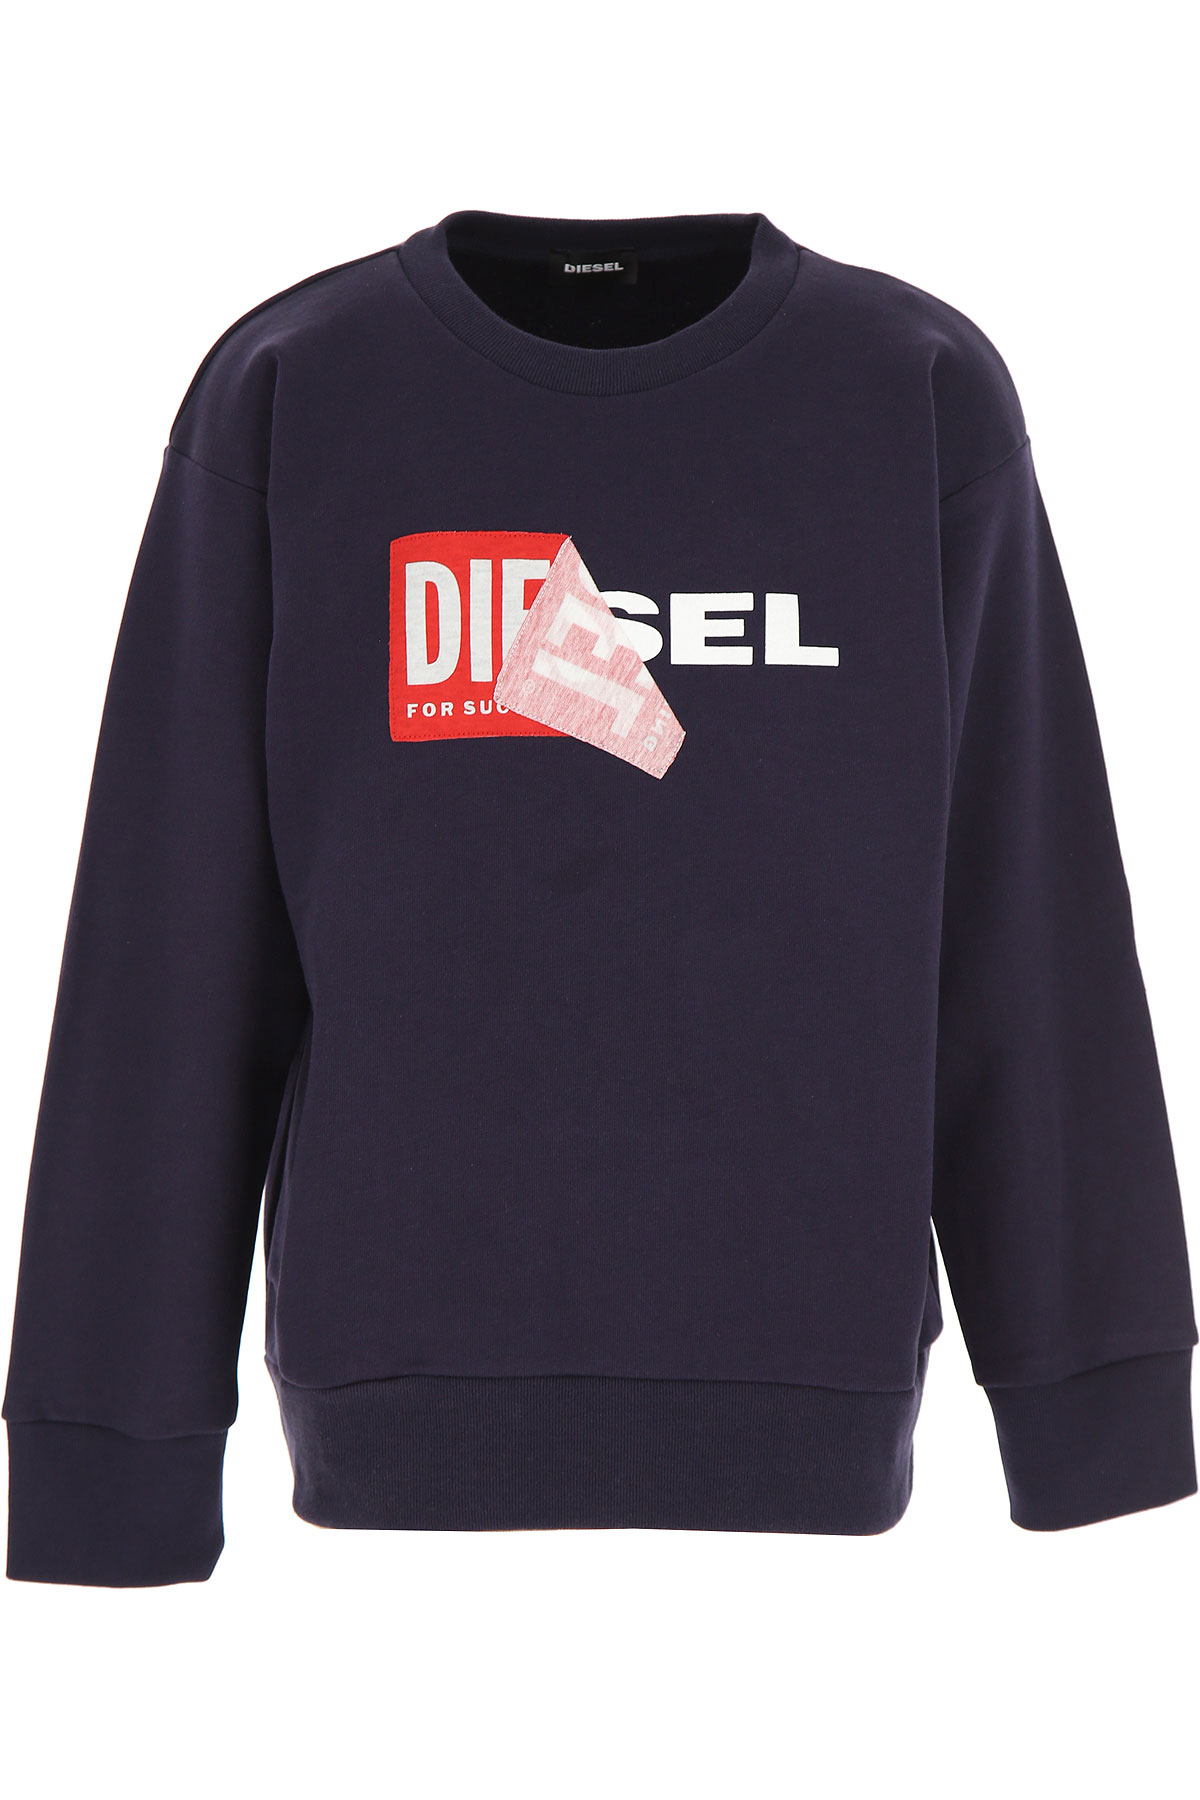 Diesel Kinder Sweatshirt & Kapuzenpullover für Jungen, Marine blau, Baumwolle, 2017, 10Y 12Y 14Y 16Y 8Y